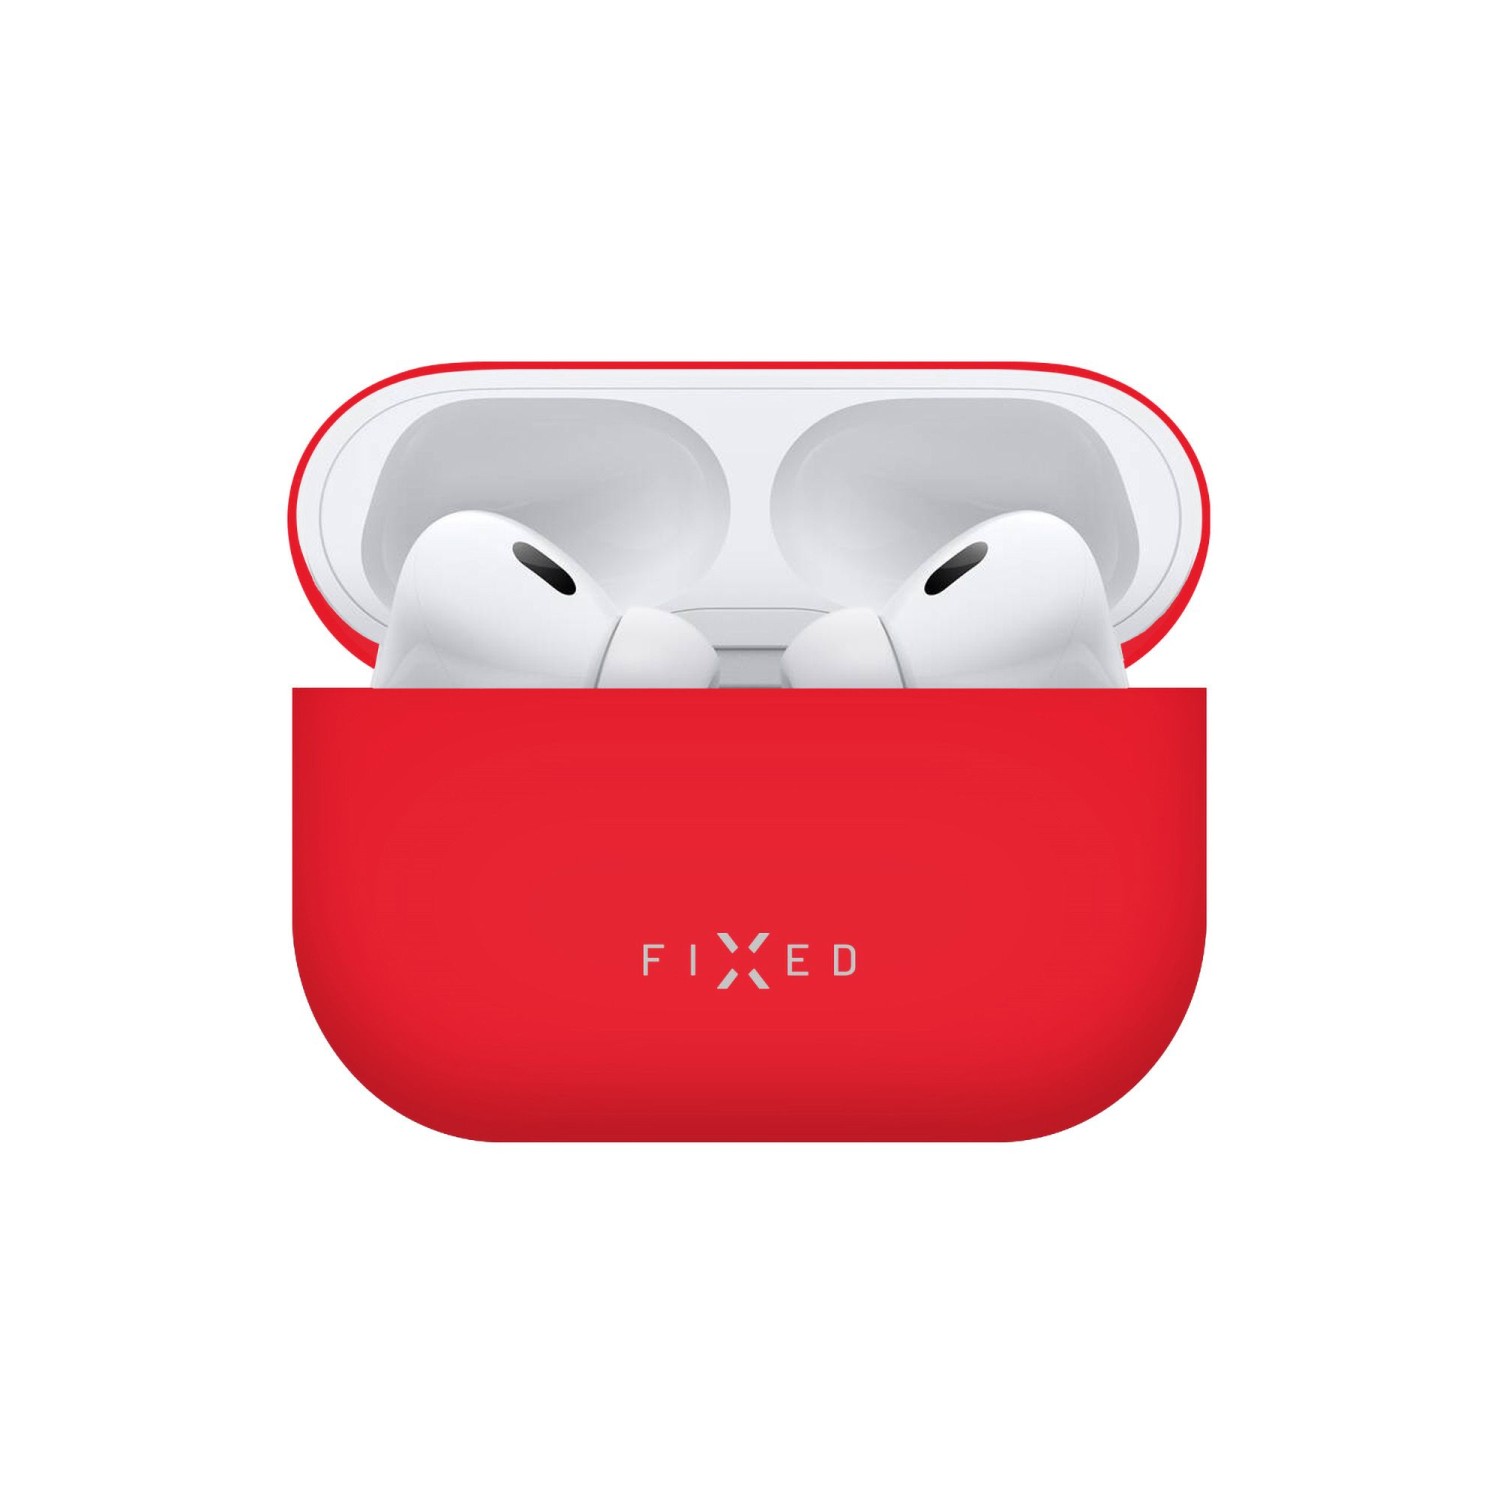 Ultratenké silikonové pouzdro FIXED Silky pro Apple AirPods Pro 2, červená